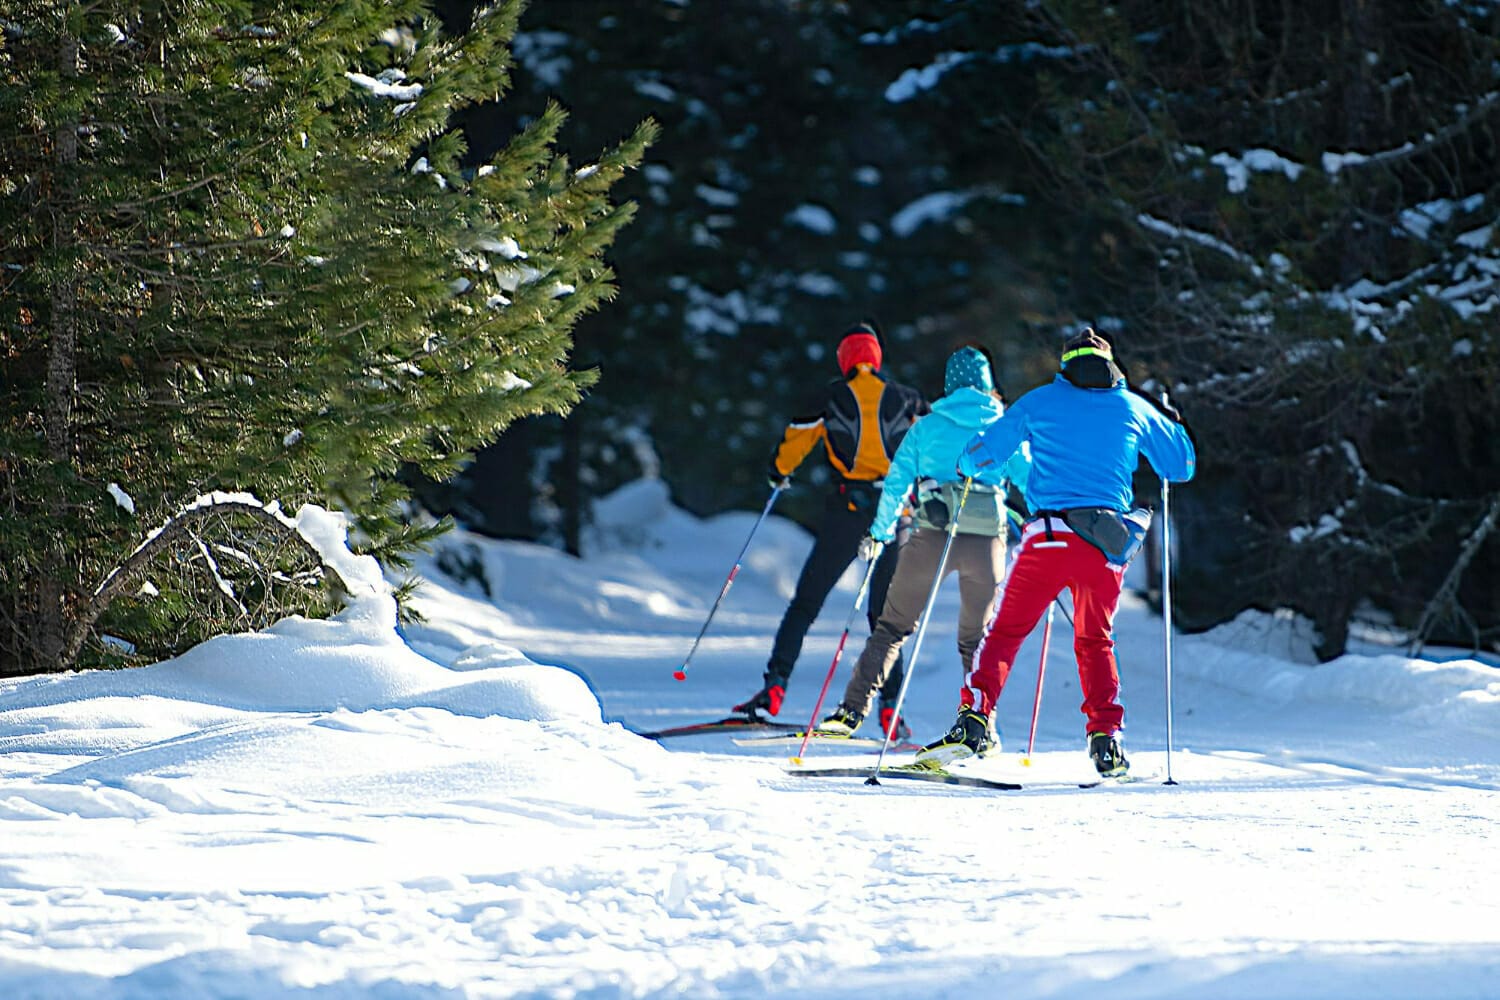 Lire la suite à propos de l’article Ski de fond au Grand Coin. Plan des pistes, domaine skiable nordique, séjour ski et location de vacances.